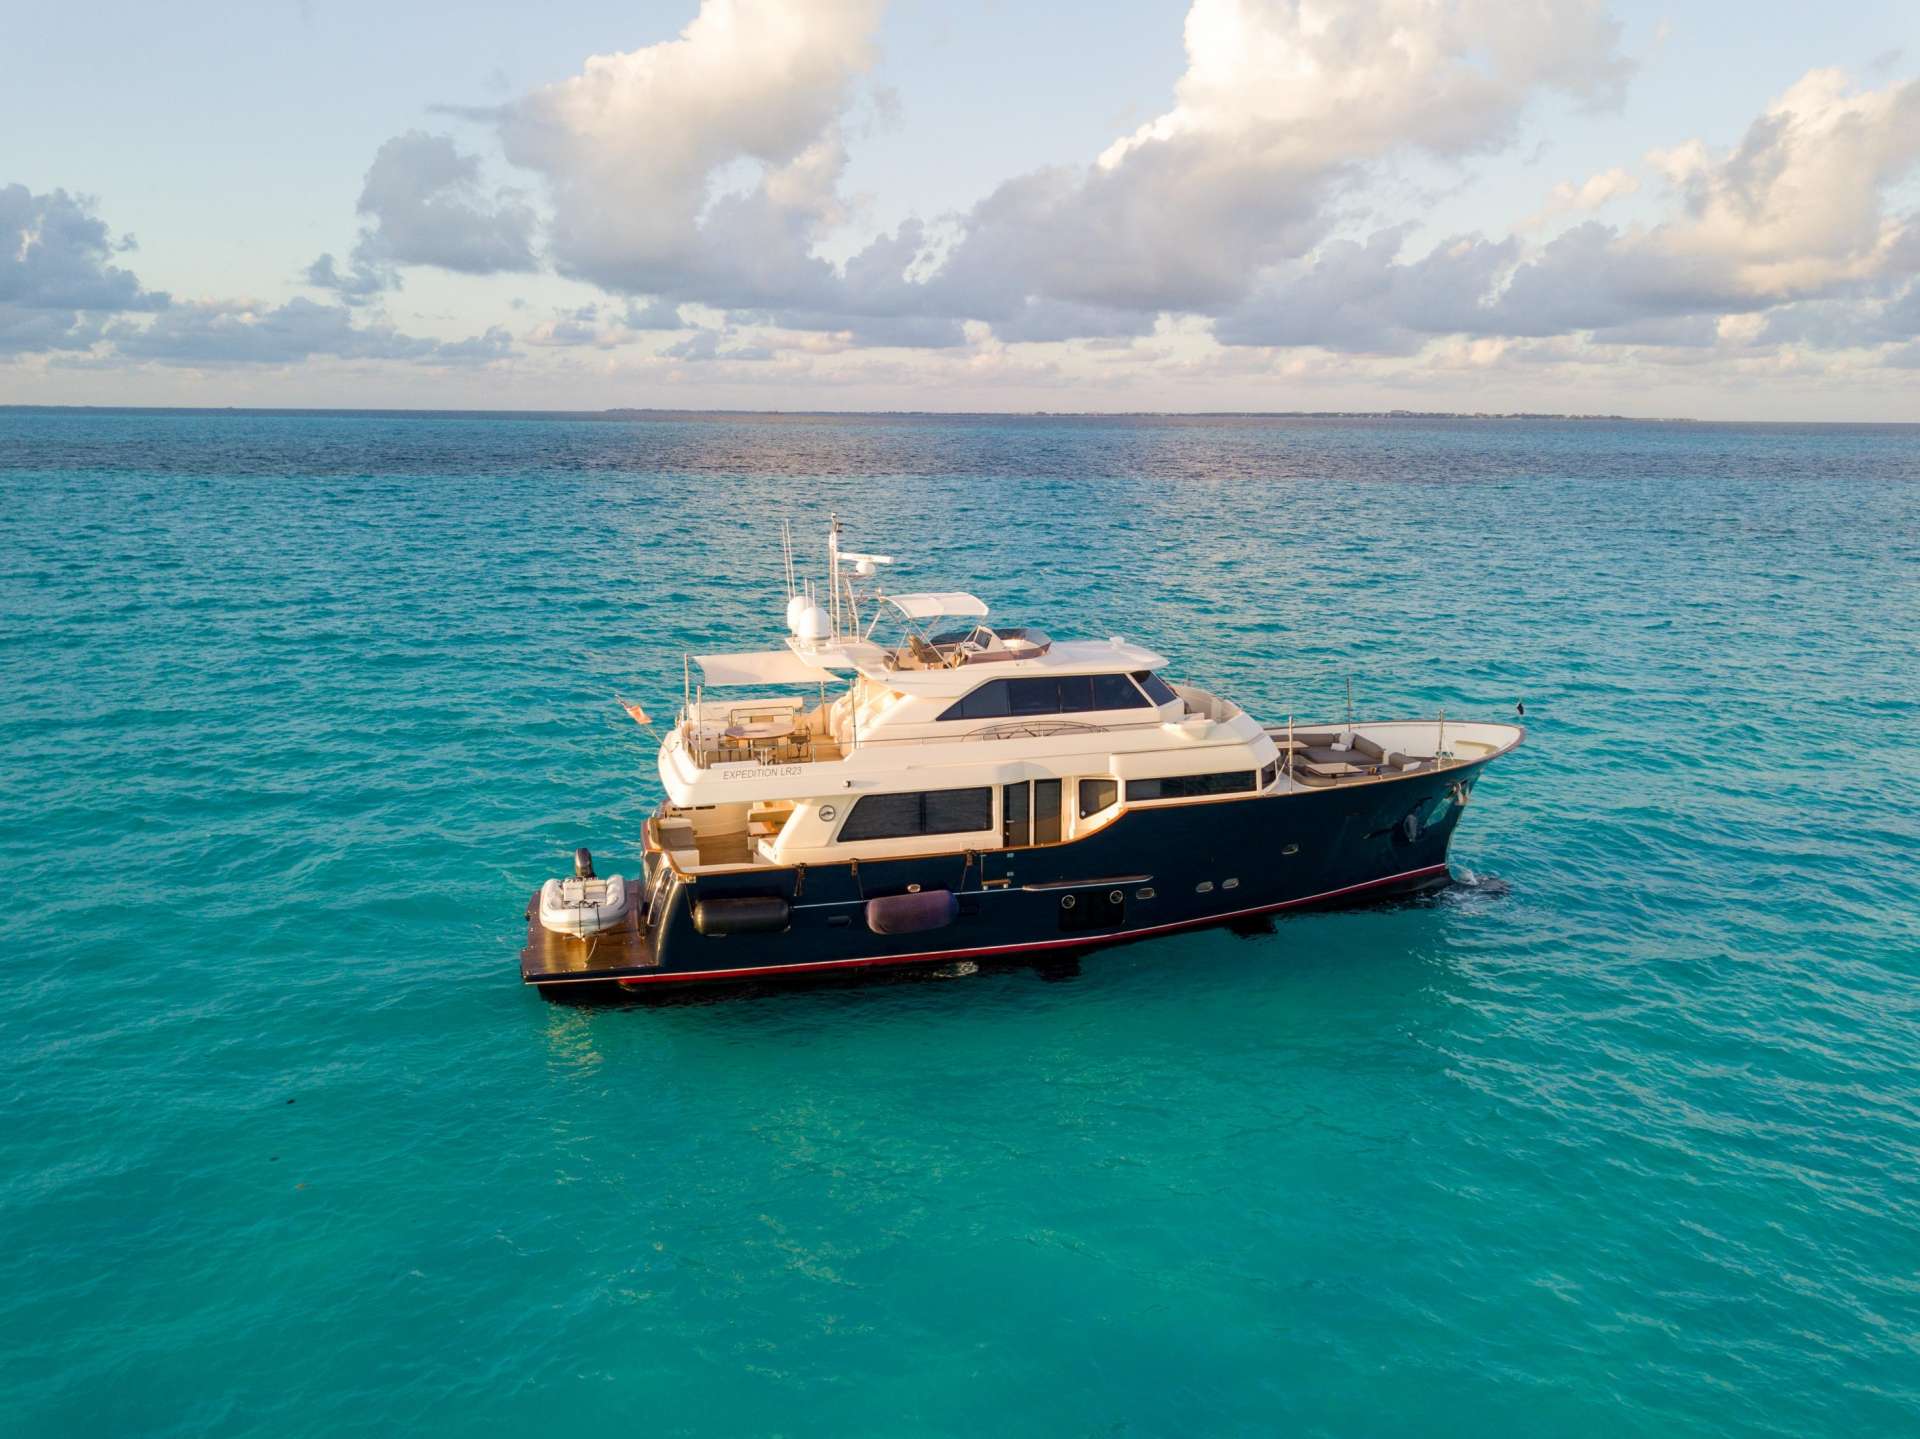 nomada - Yacht Charter Mexico & Boat hire in US East Coast, Bahamas & Mexico 1